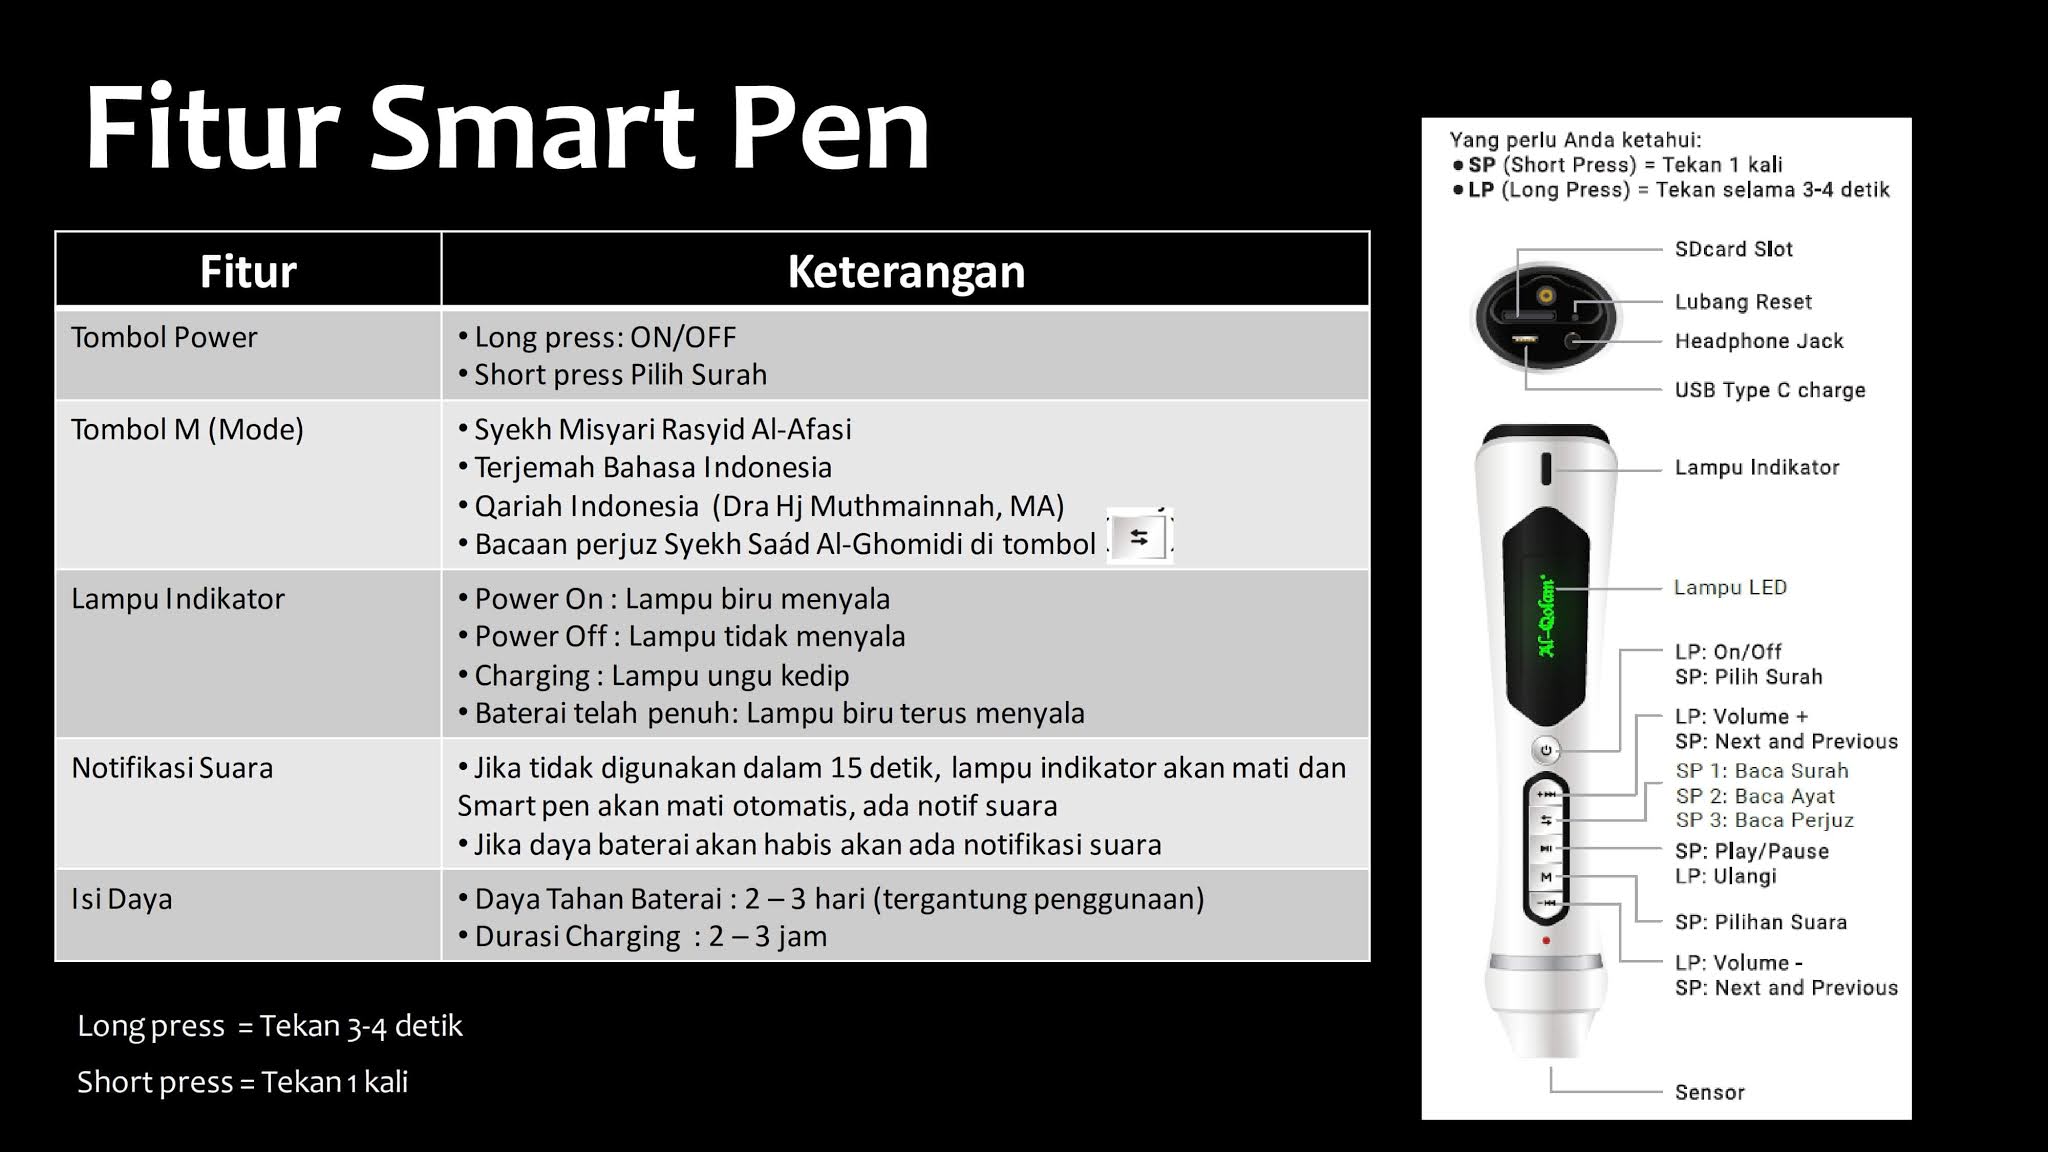 Al-Qolam Smart Pen